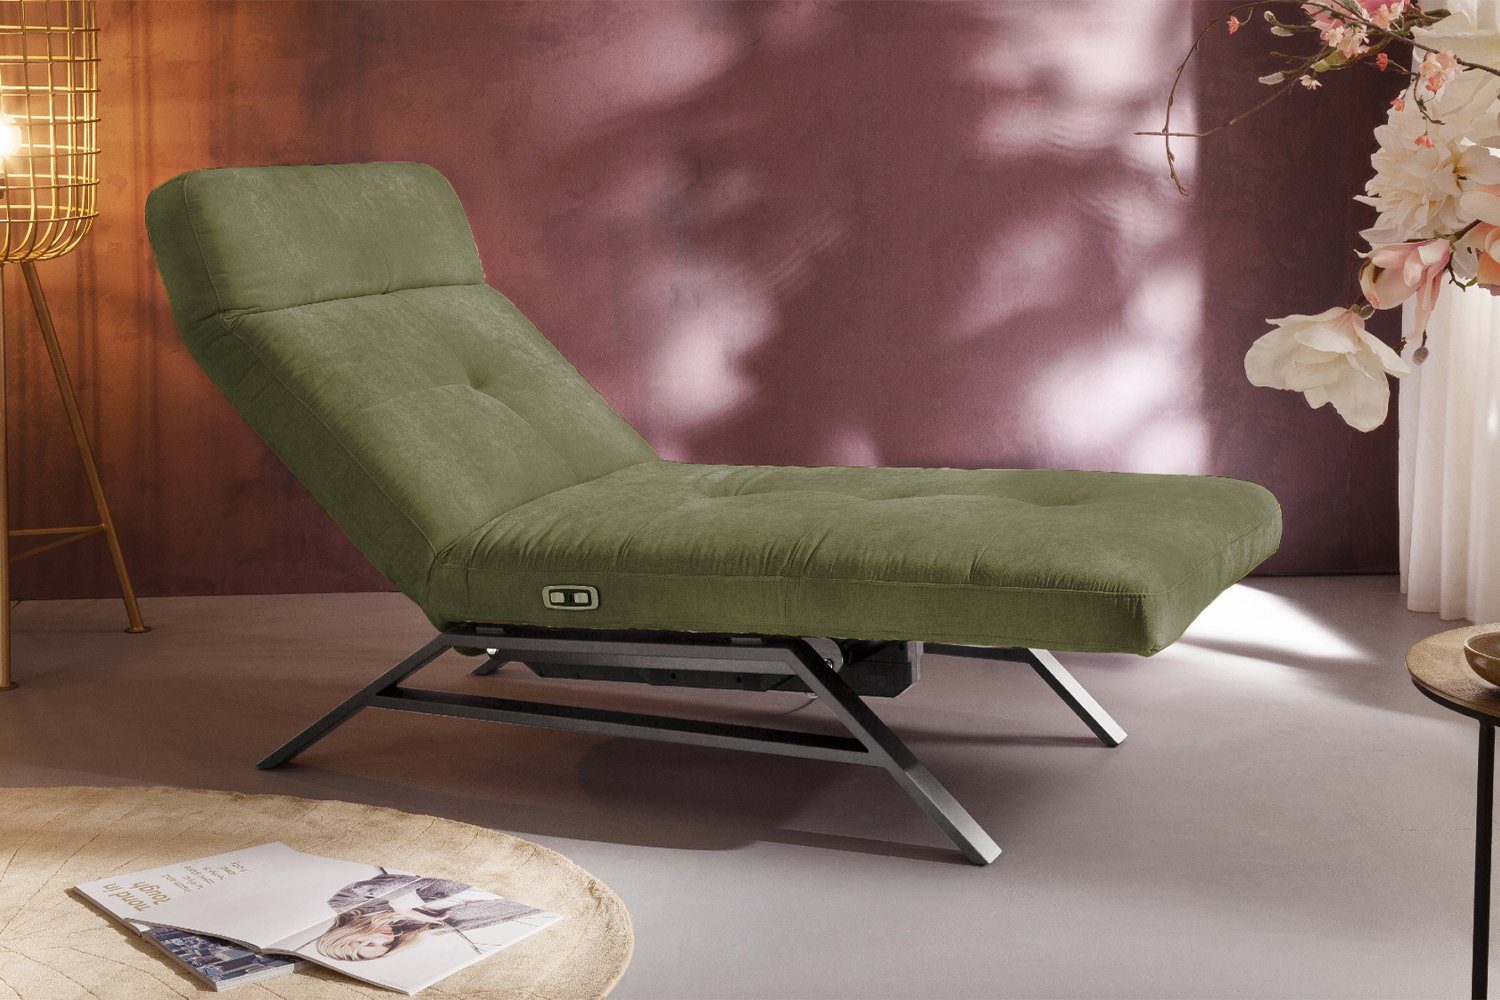 KAWOLA chrome, Breiten olivgrün Farben Sessel AMERIVA, und versch. Fuß Relaxliege schwarz od. Velvet,